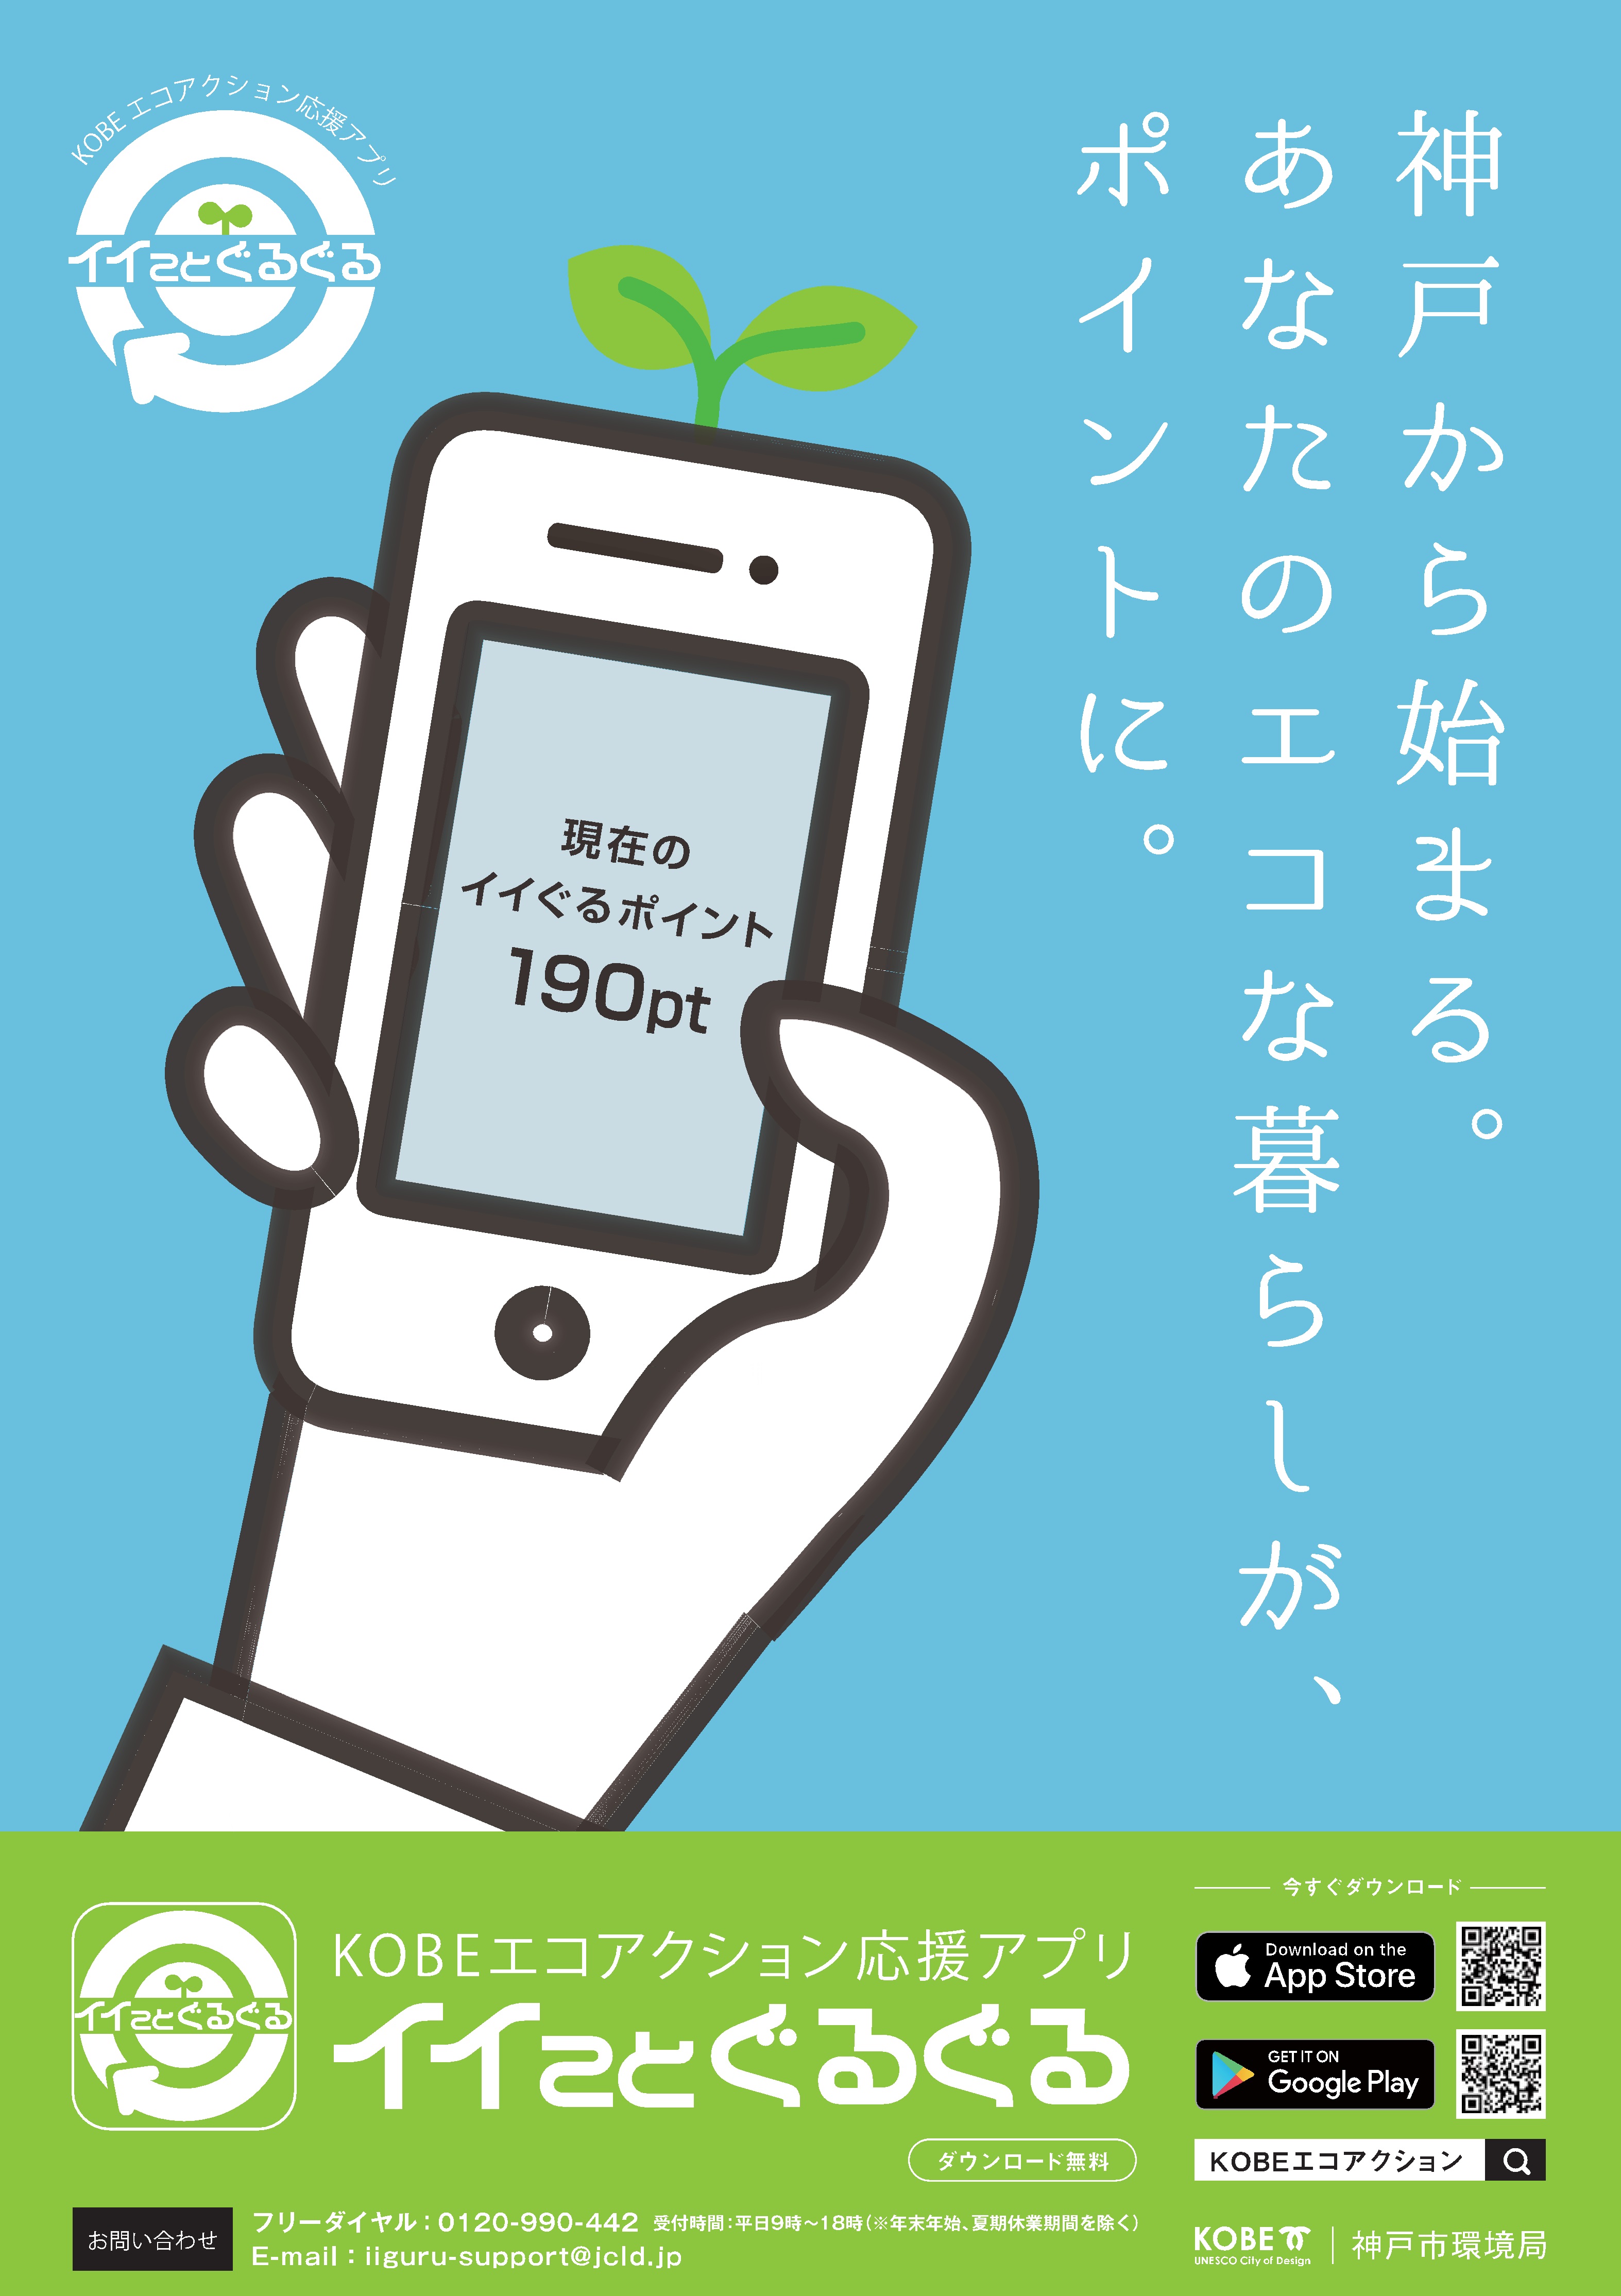 エコな暮らしでポイントｇｅｔ ヒラキは 神戸市が開始した地球も自分もうれしいエコ応援スマホアプリ イイことぐるぐる 事業に賛同しています ヒラキ株式会社のプレスリリース